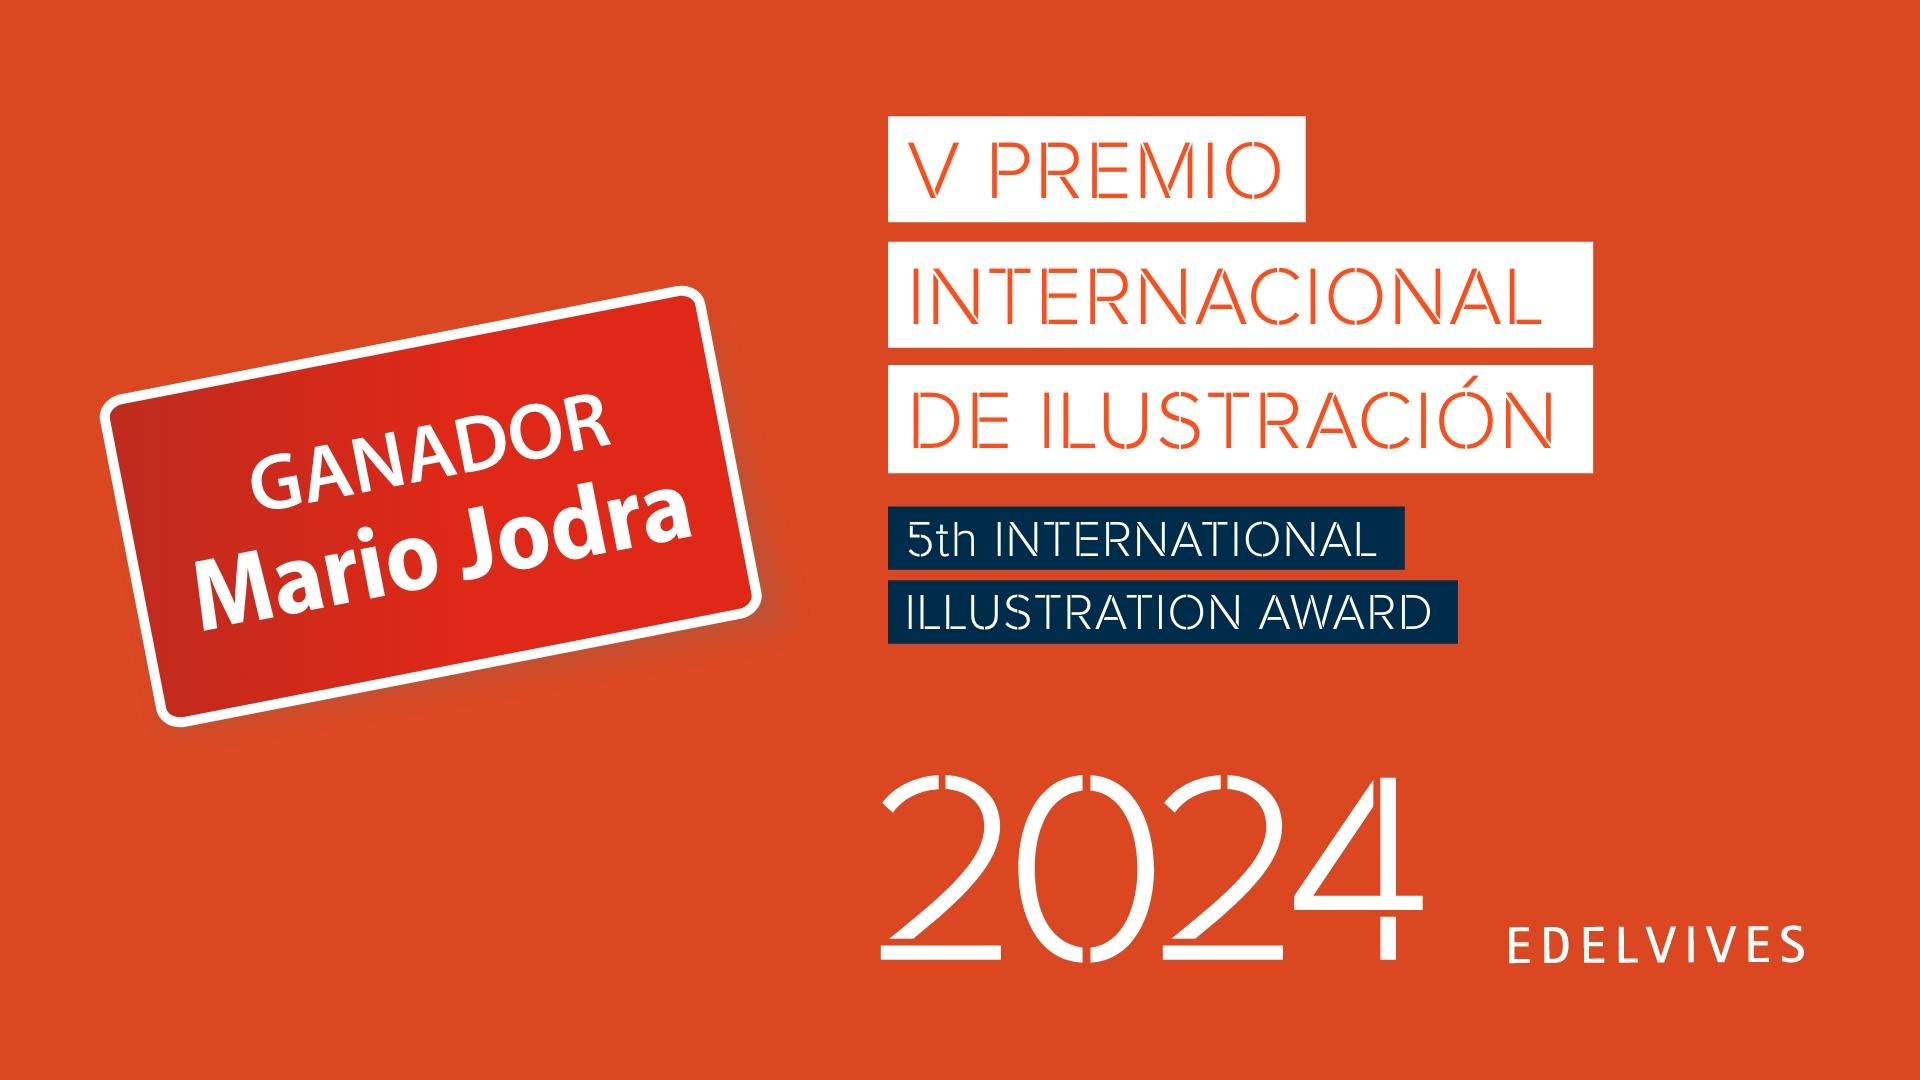 Mario Jodra, V Premio Internacional de Ilustración Edelvives